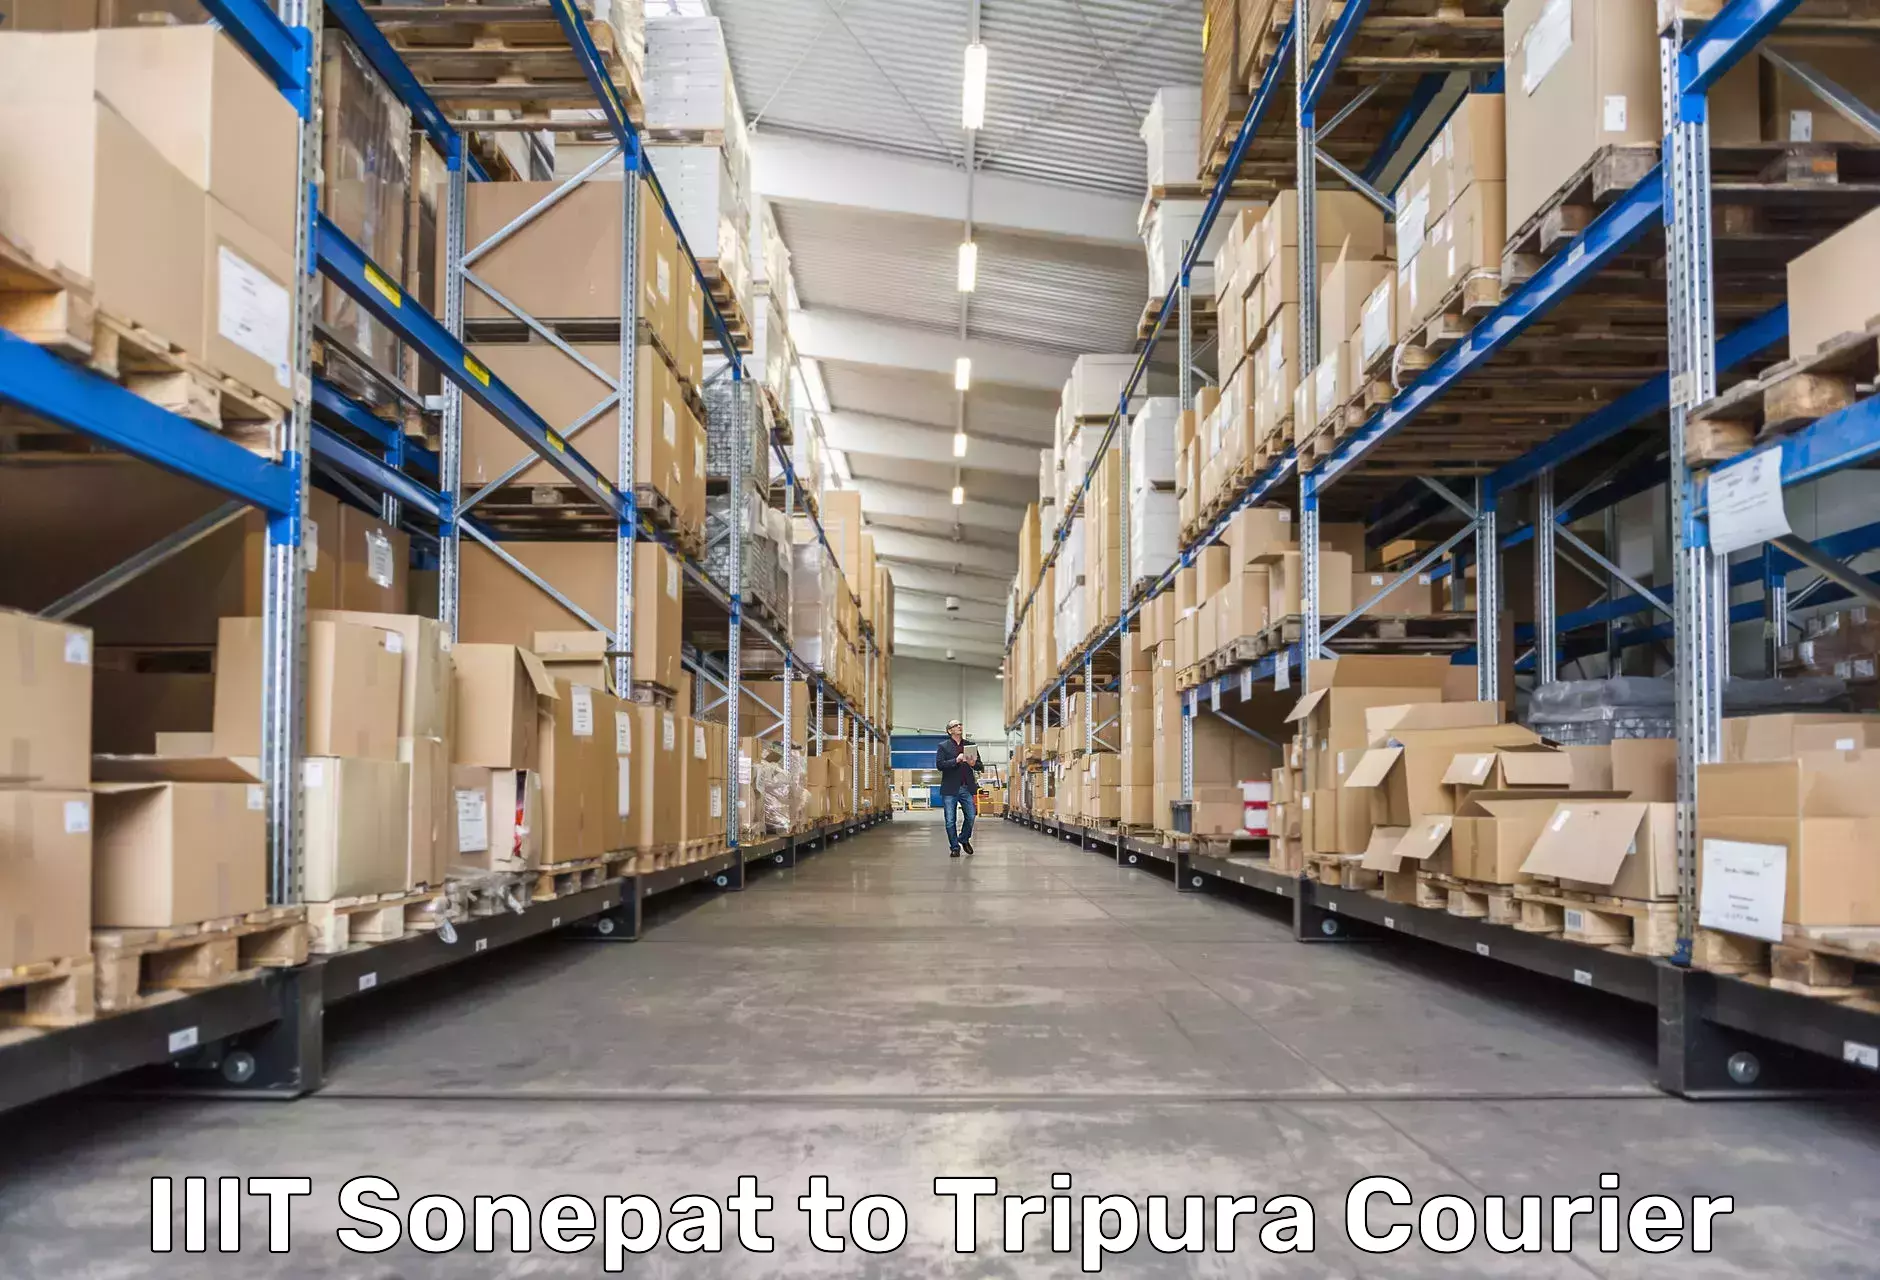 Smart courier technologies IIIT Sonepat to Tripura